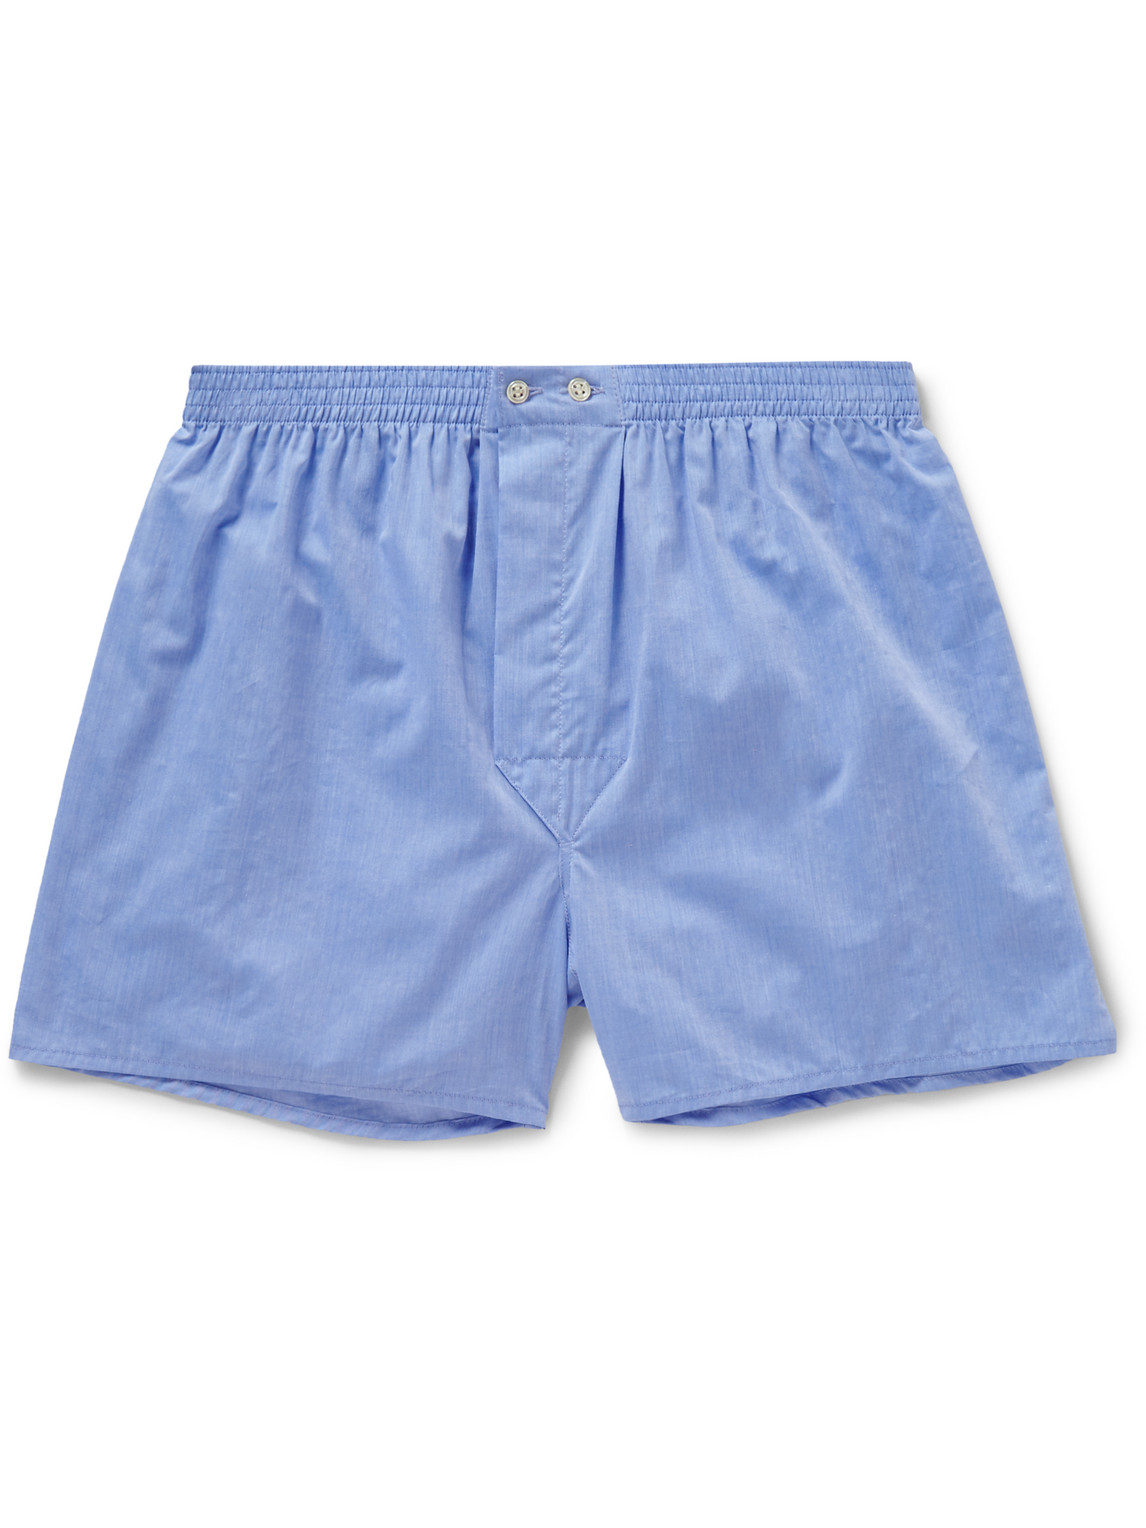 Derek Rose Amalfi Cotton Boxer Shorts In Blue